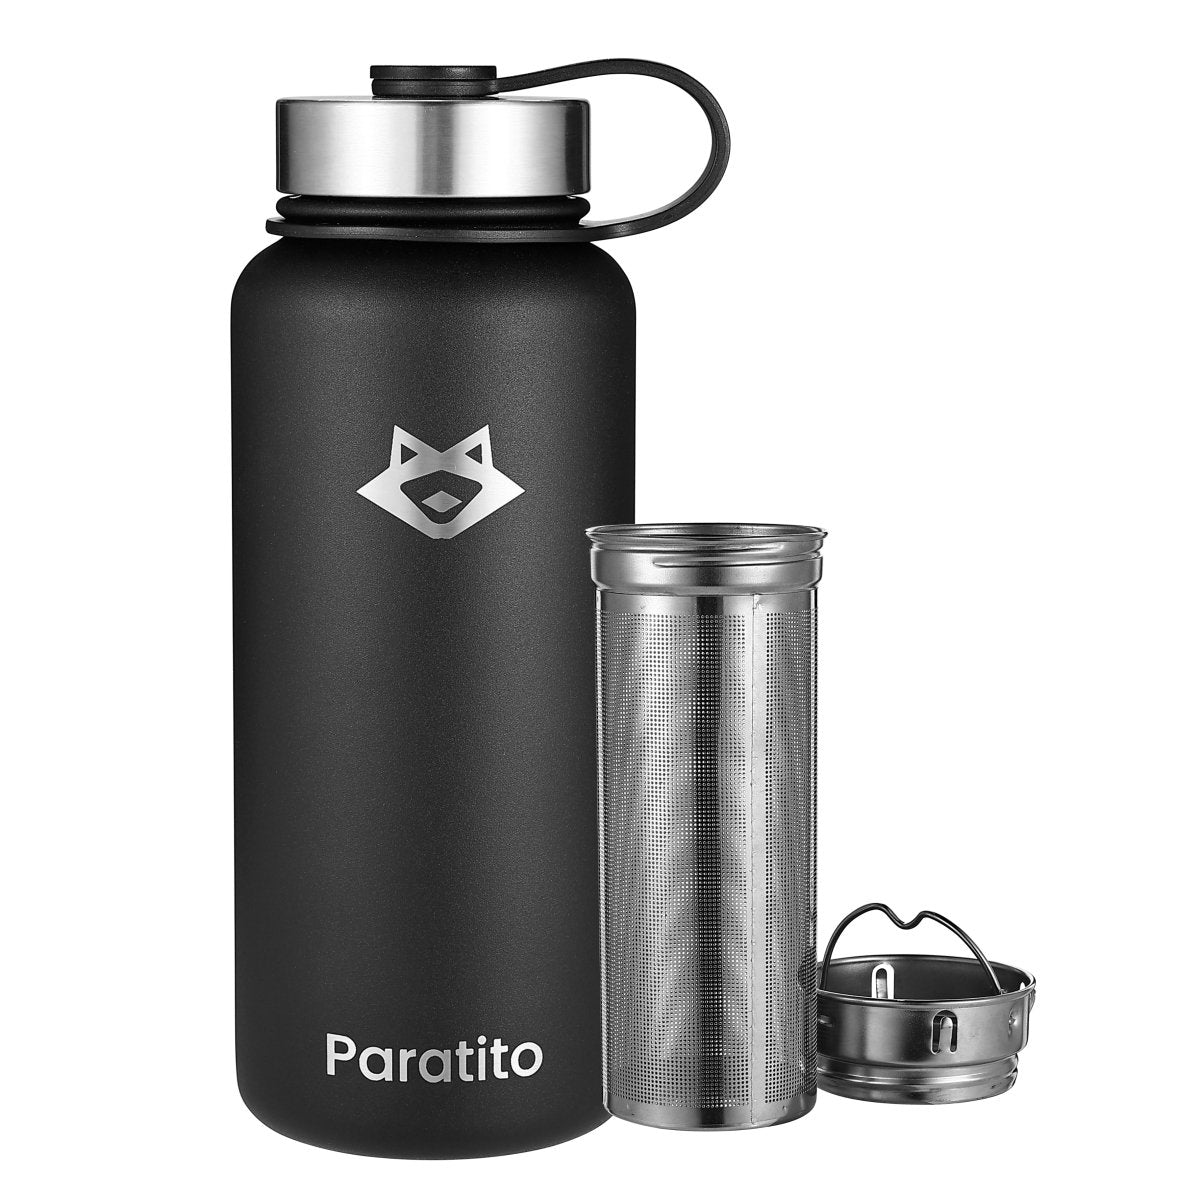 PARATITO BPA-freie Edelstahl Teeflasche, Thermosflasche mit Sieb - Paratito